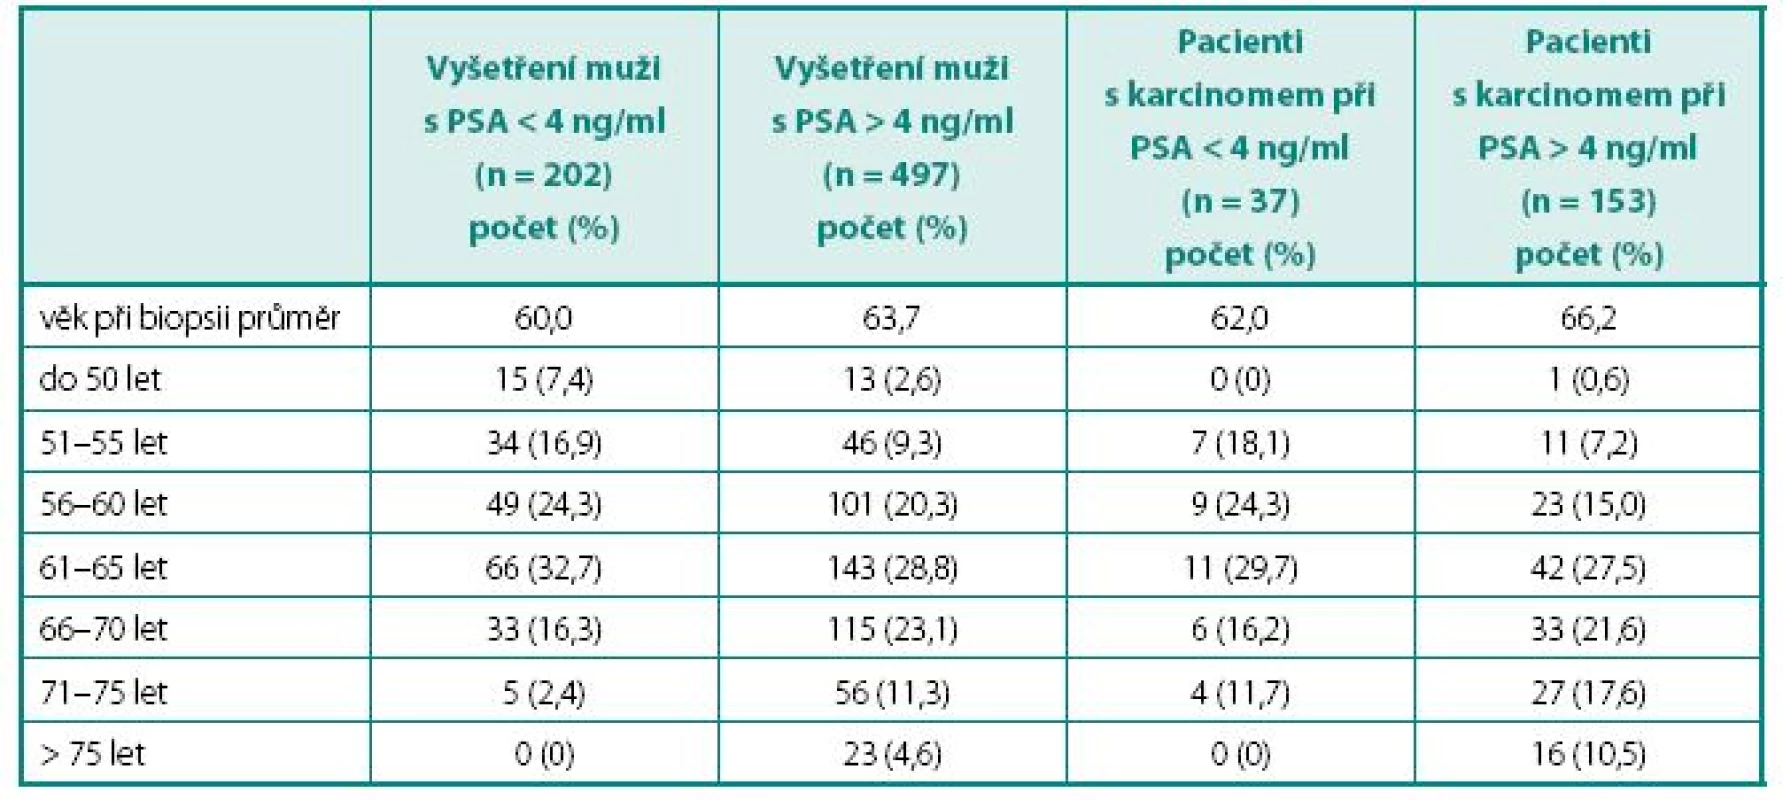 Věková charakteristika souboru
Table 1. Age characteristic of patients’file